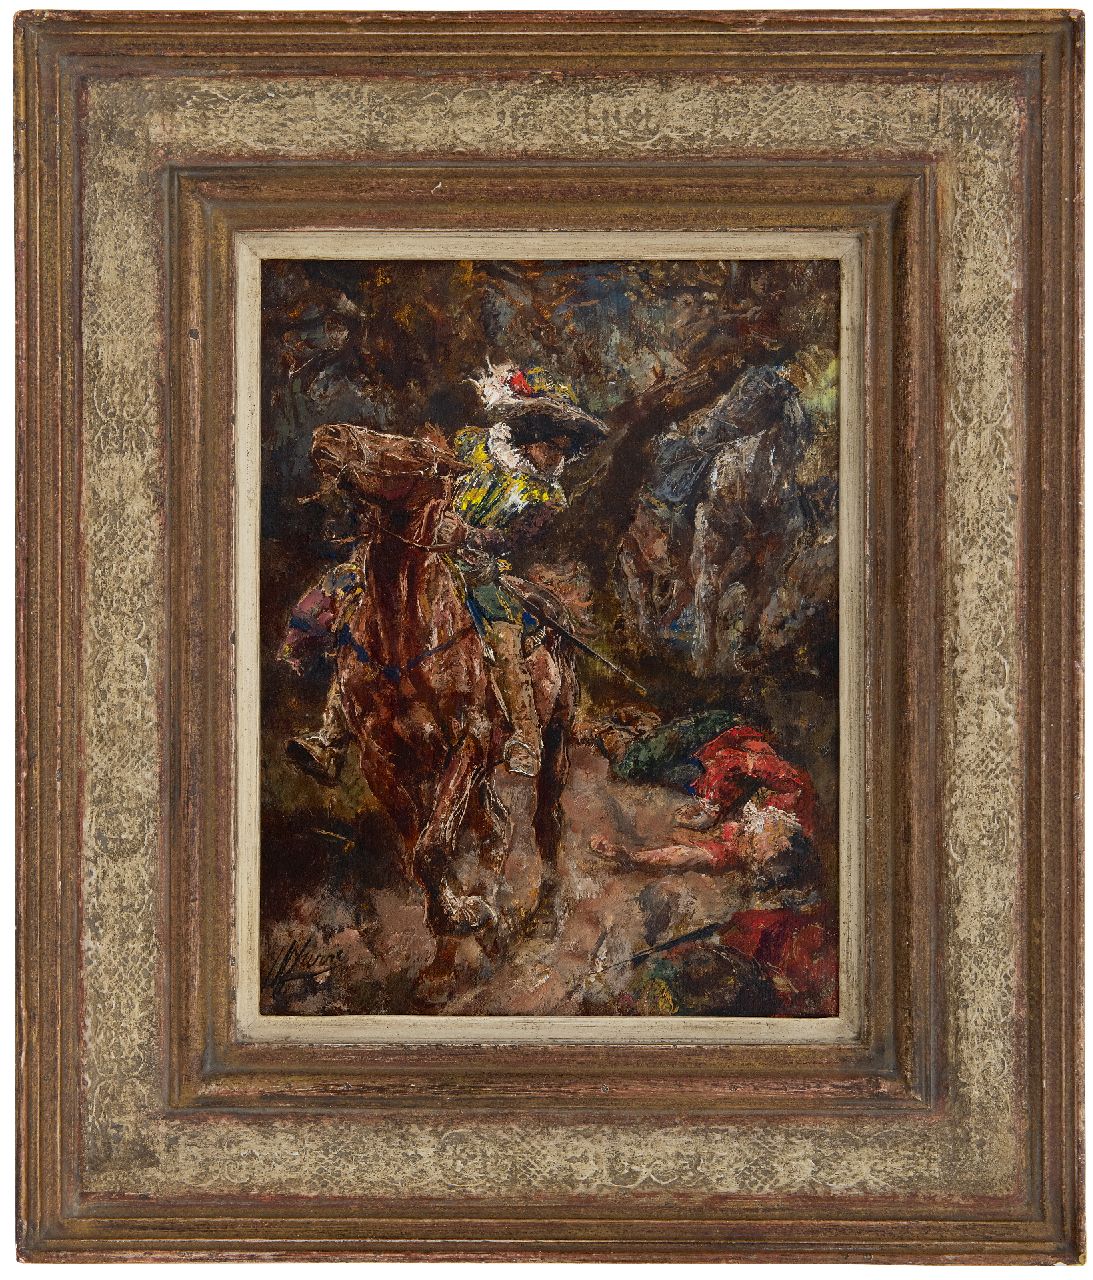 Jurres J.H.  | Johannes Hendricus Jurres, Scène uit Gil Blas, olieverf op paneel 28,4 x 22,0 cm, gesigneerd linksonder